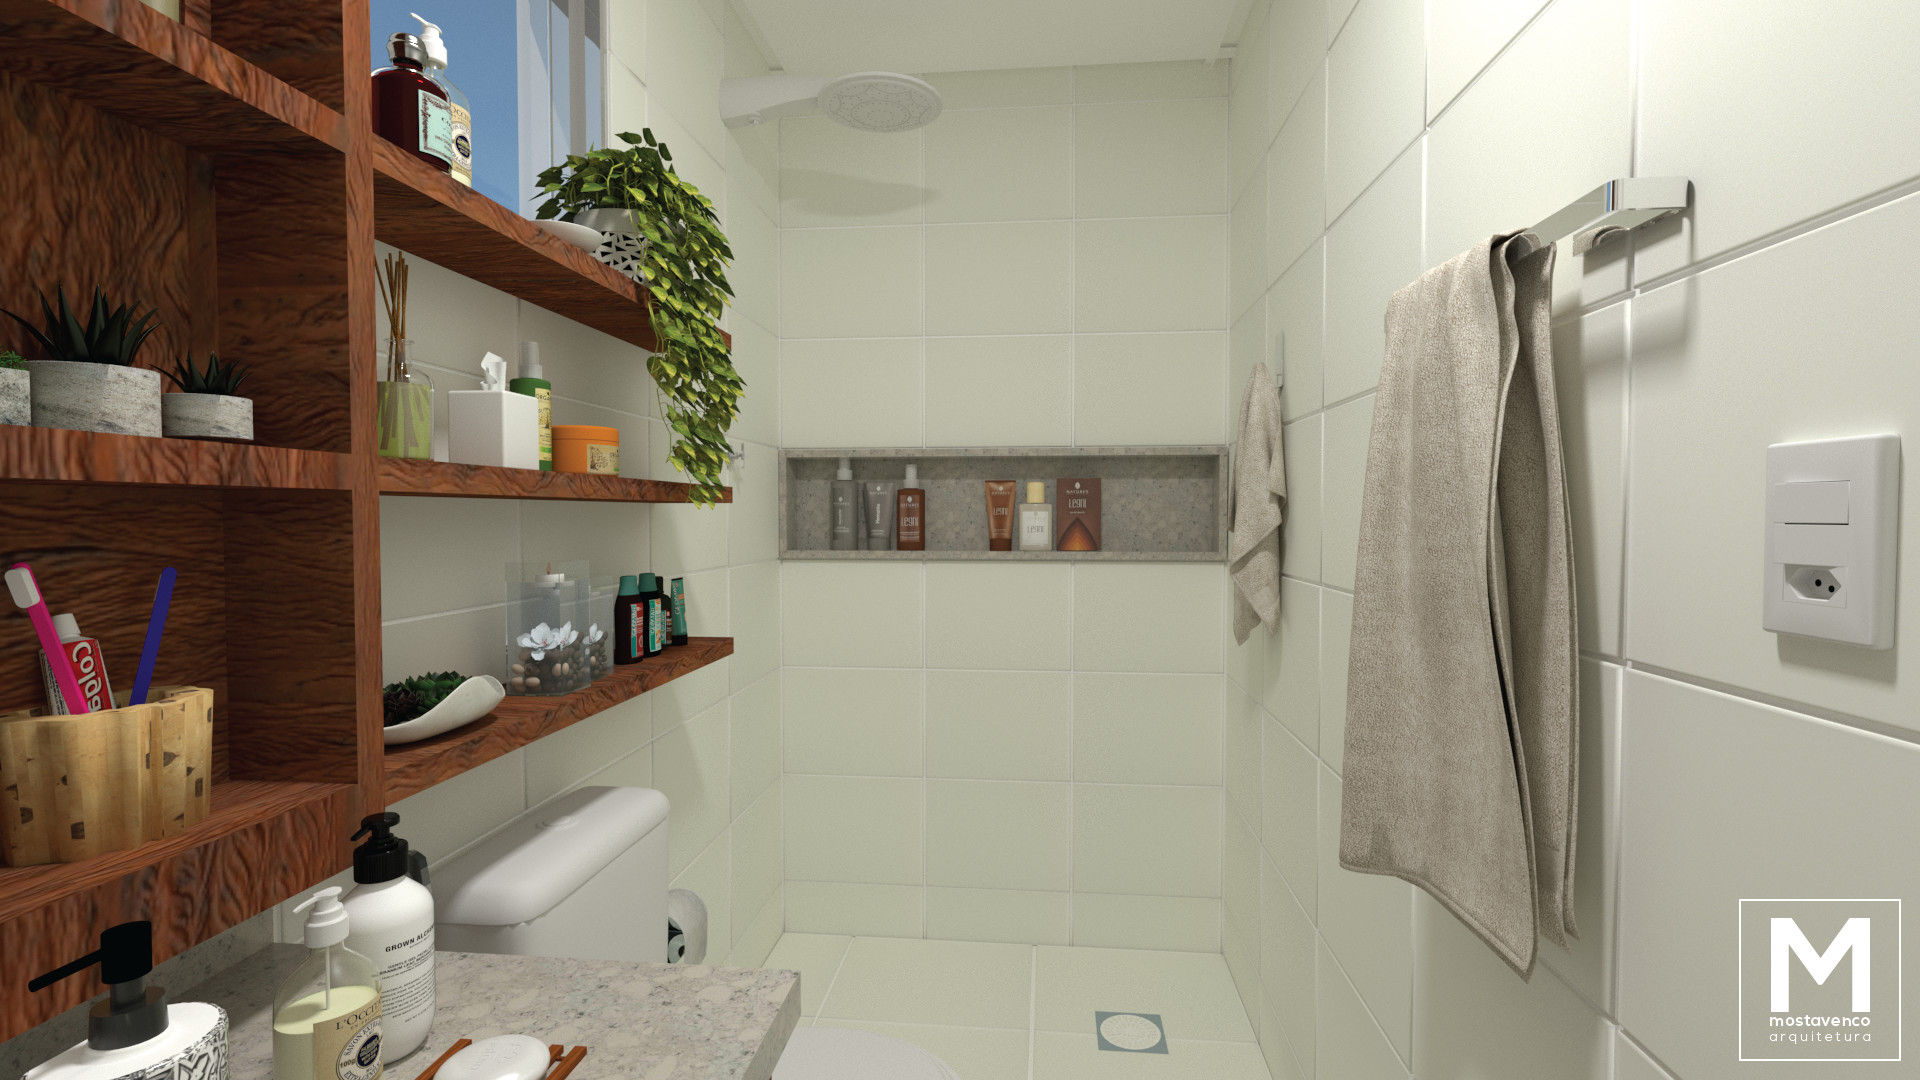 Banheiro Suíte RV, Mostavenco Arquitetura Mostavenco Arquitetura Eclectic style bathroom Tiles